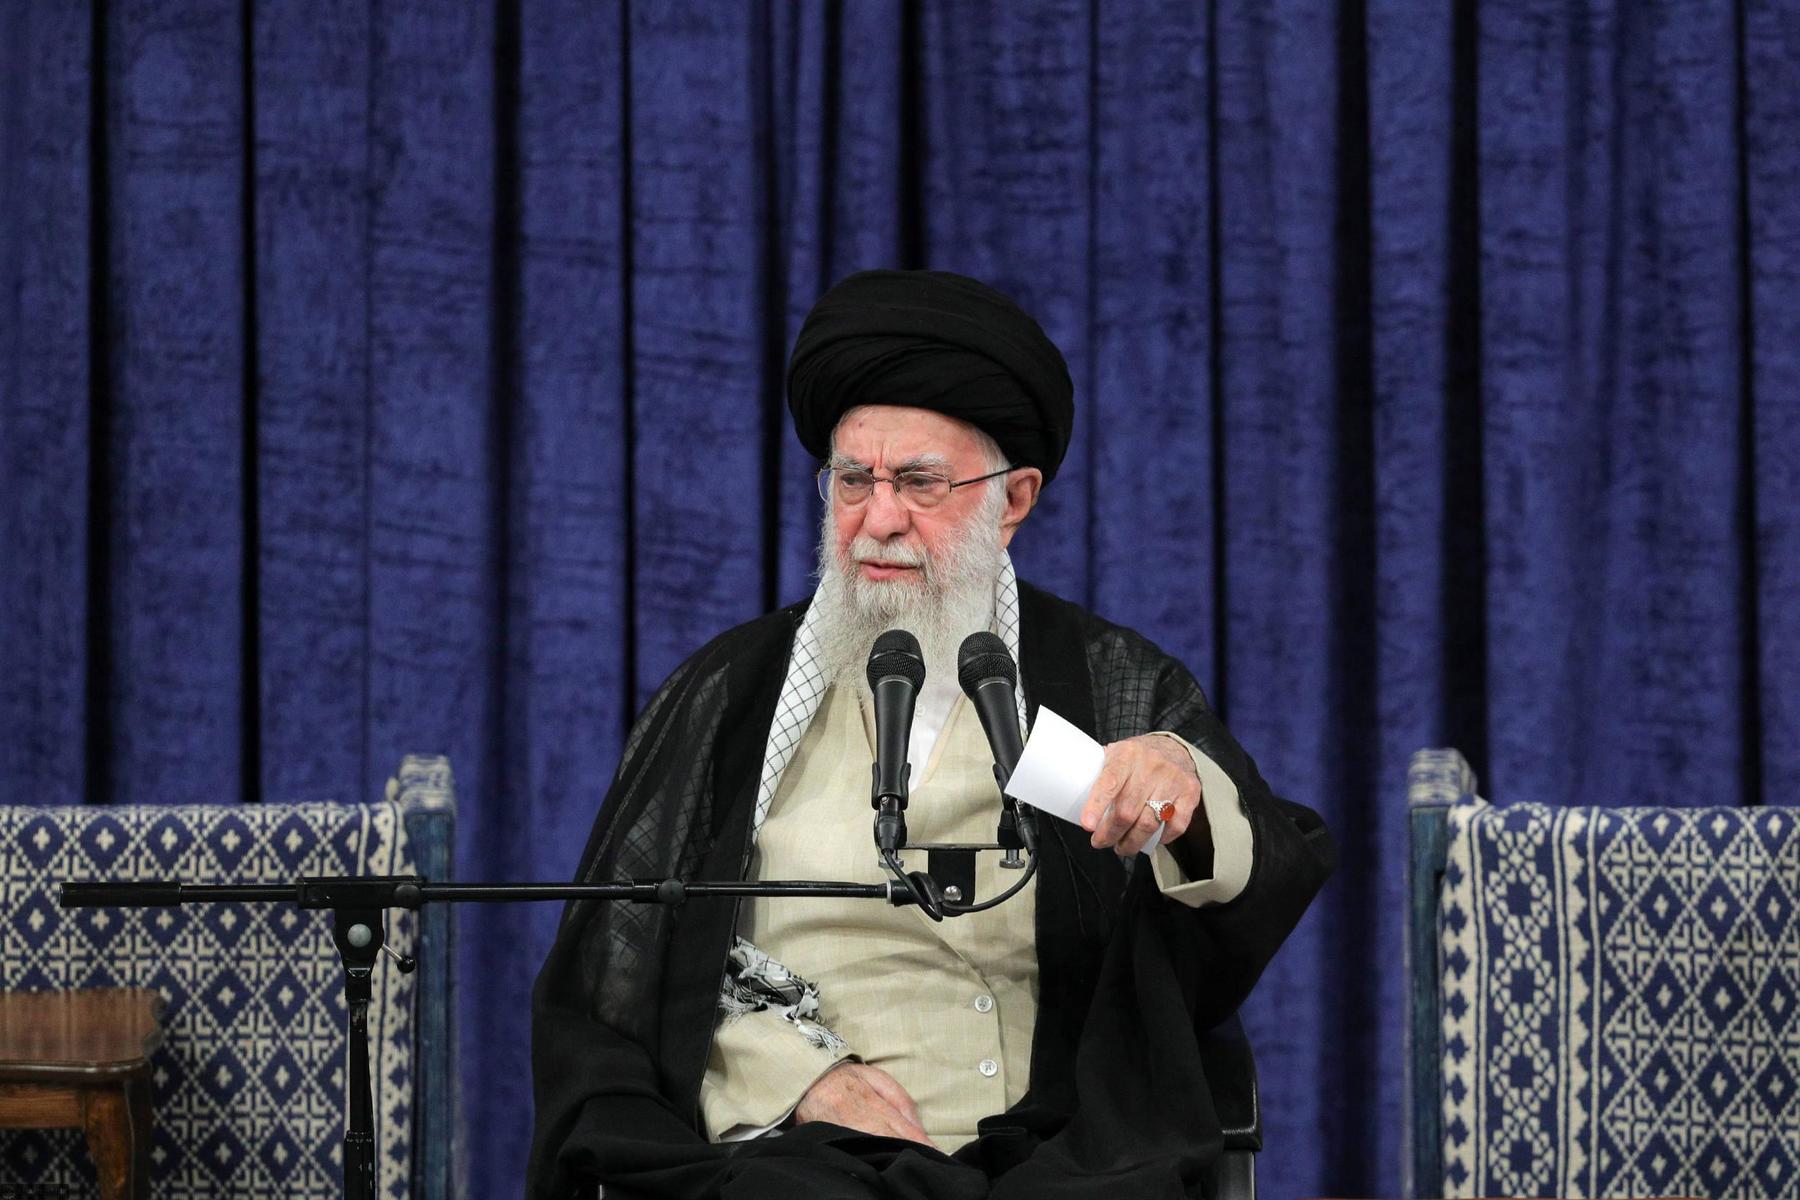 Tod von Ismail Haniyeh: Khamenei droht Israel mit „harter Bestrafung“